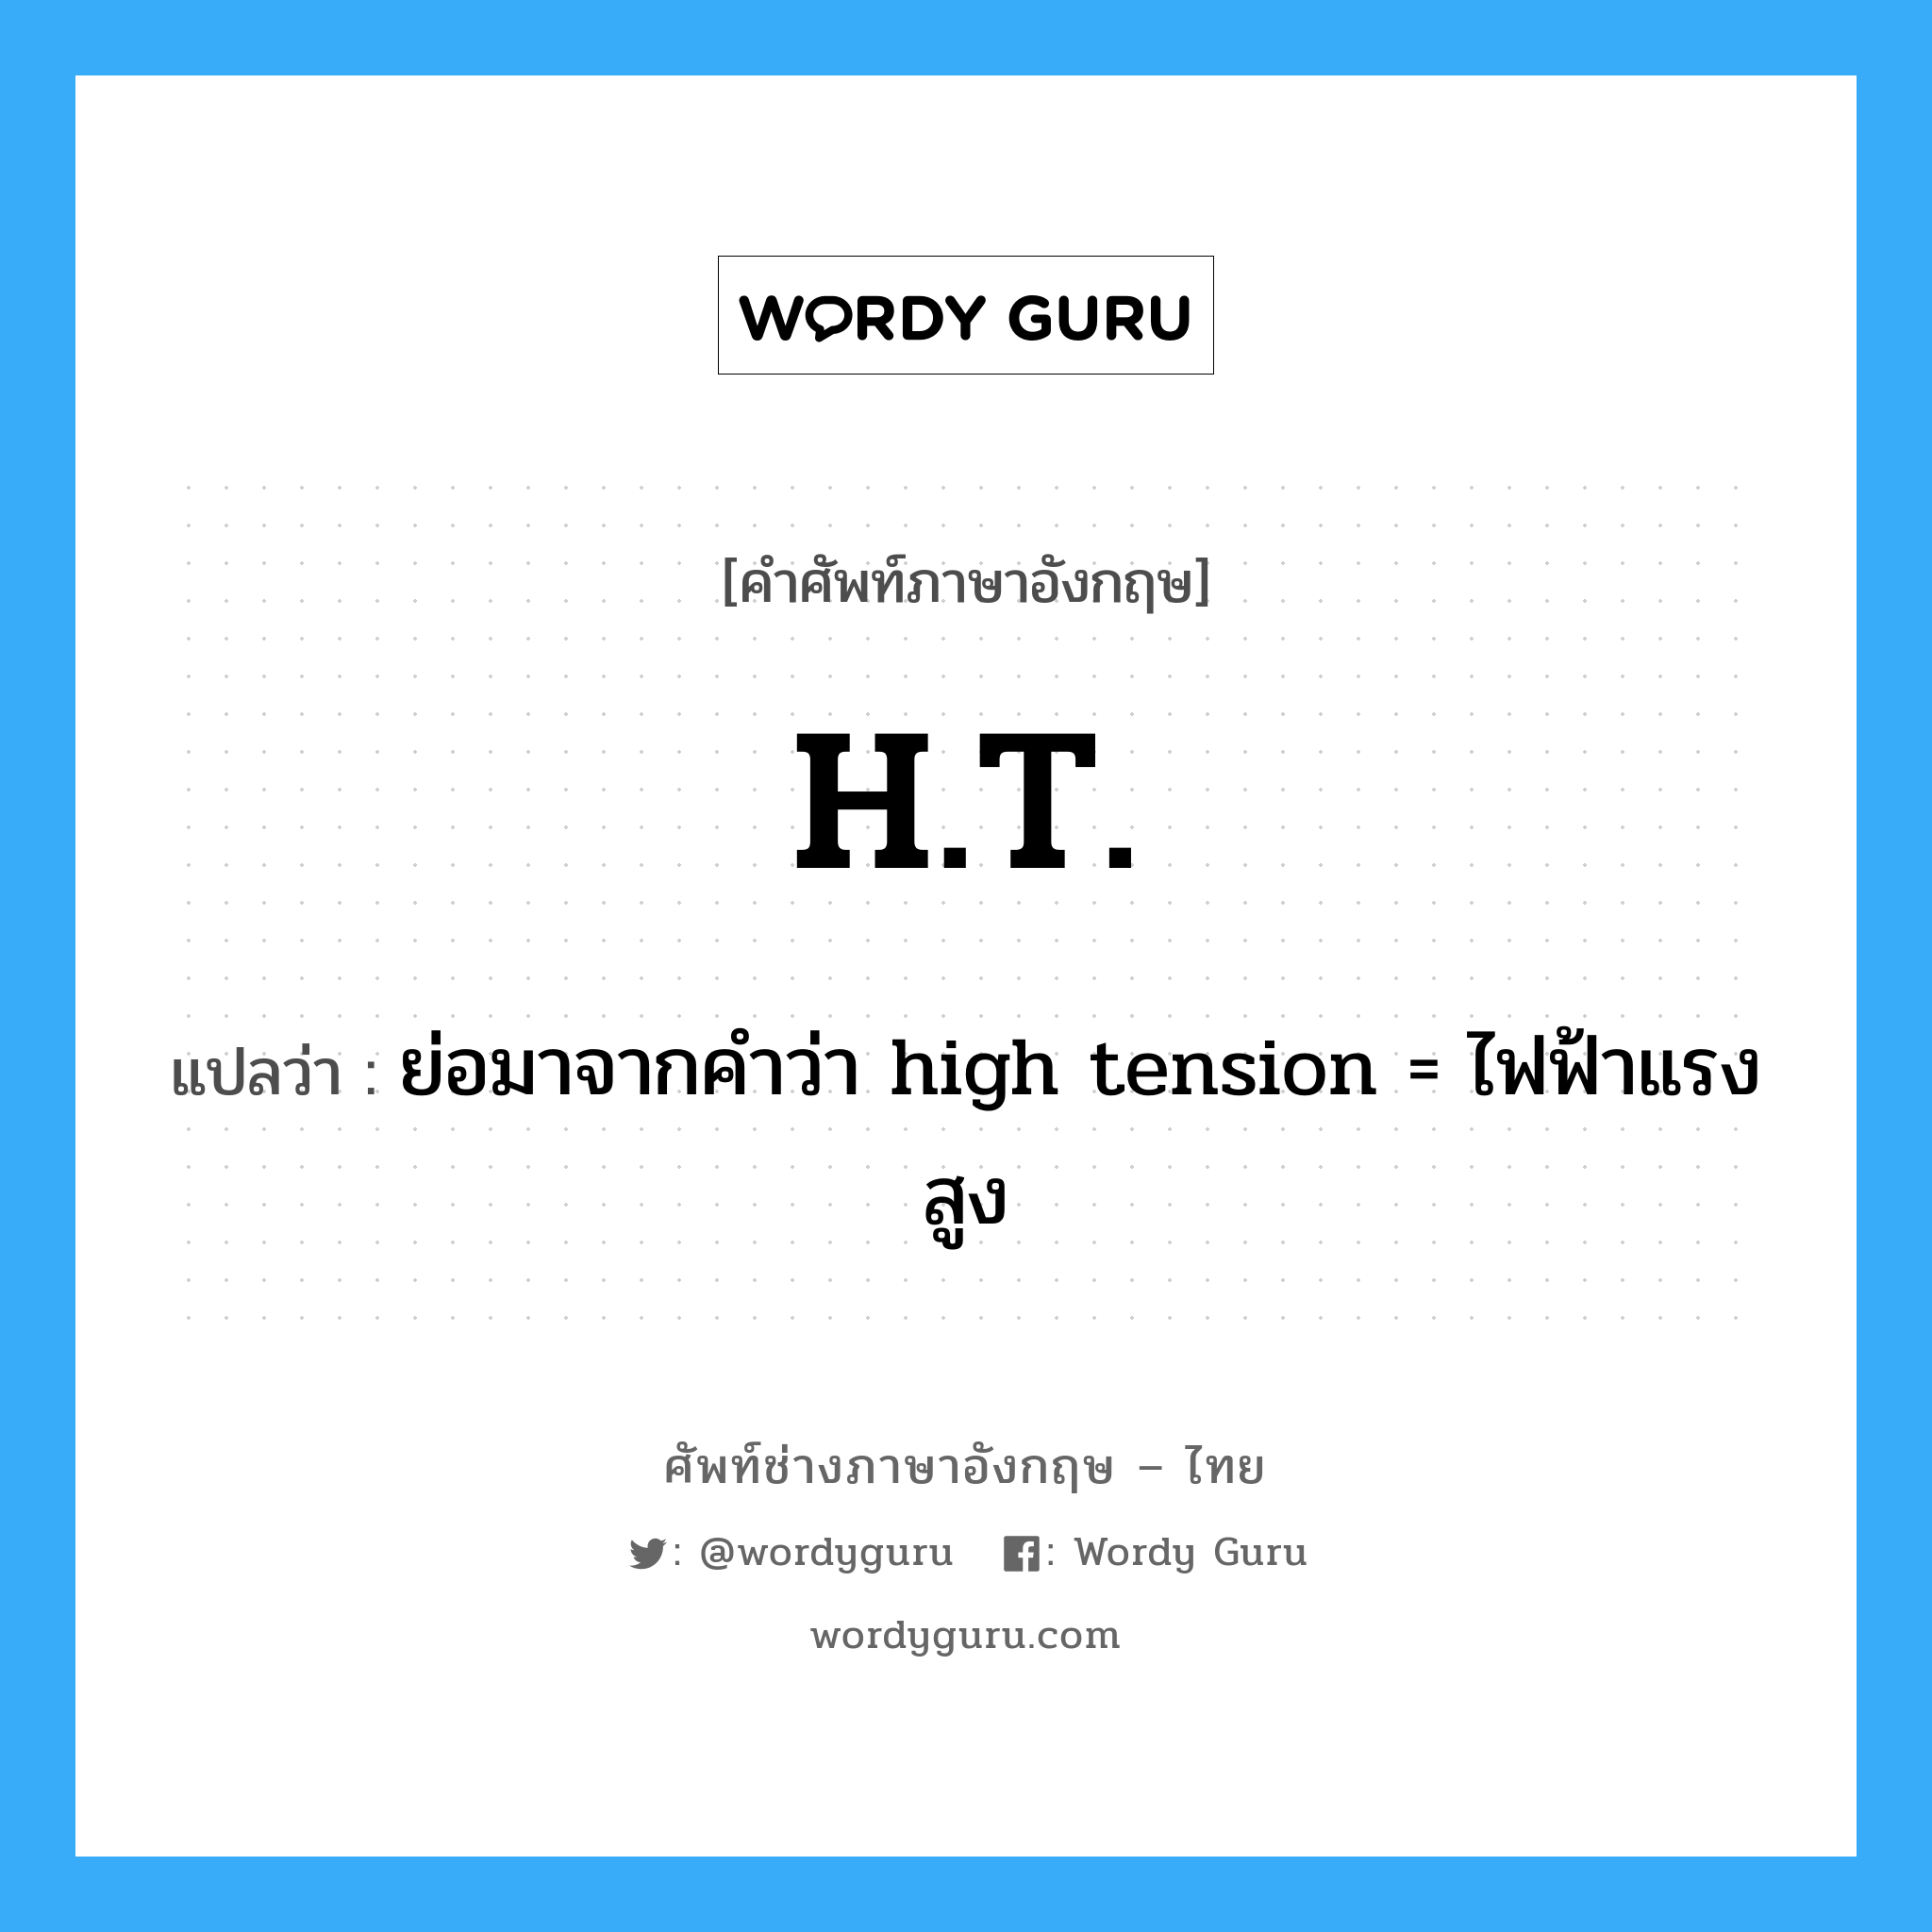 ย่อมาจากคำว่า high tension = ไฟฟ้าแรงสูง ภาษาอังกฤษ?, คำศัพท์ช่างภาษาอังกฤษ - ไทย ย่อมาจากคำว่า high tension = ไฟฟ้าแรงสูง คำศัพท์ภาษาอังกฤษ ย่อมาจากคำว่า high tension = ไฟฟ้าแรงสูง แปลว่า H.T.